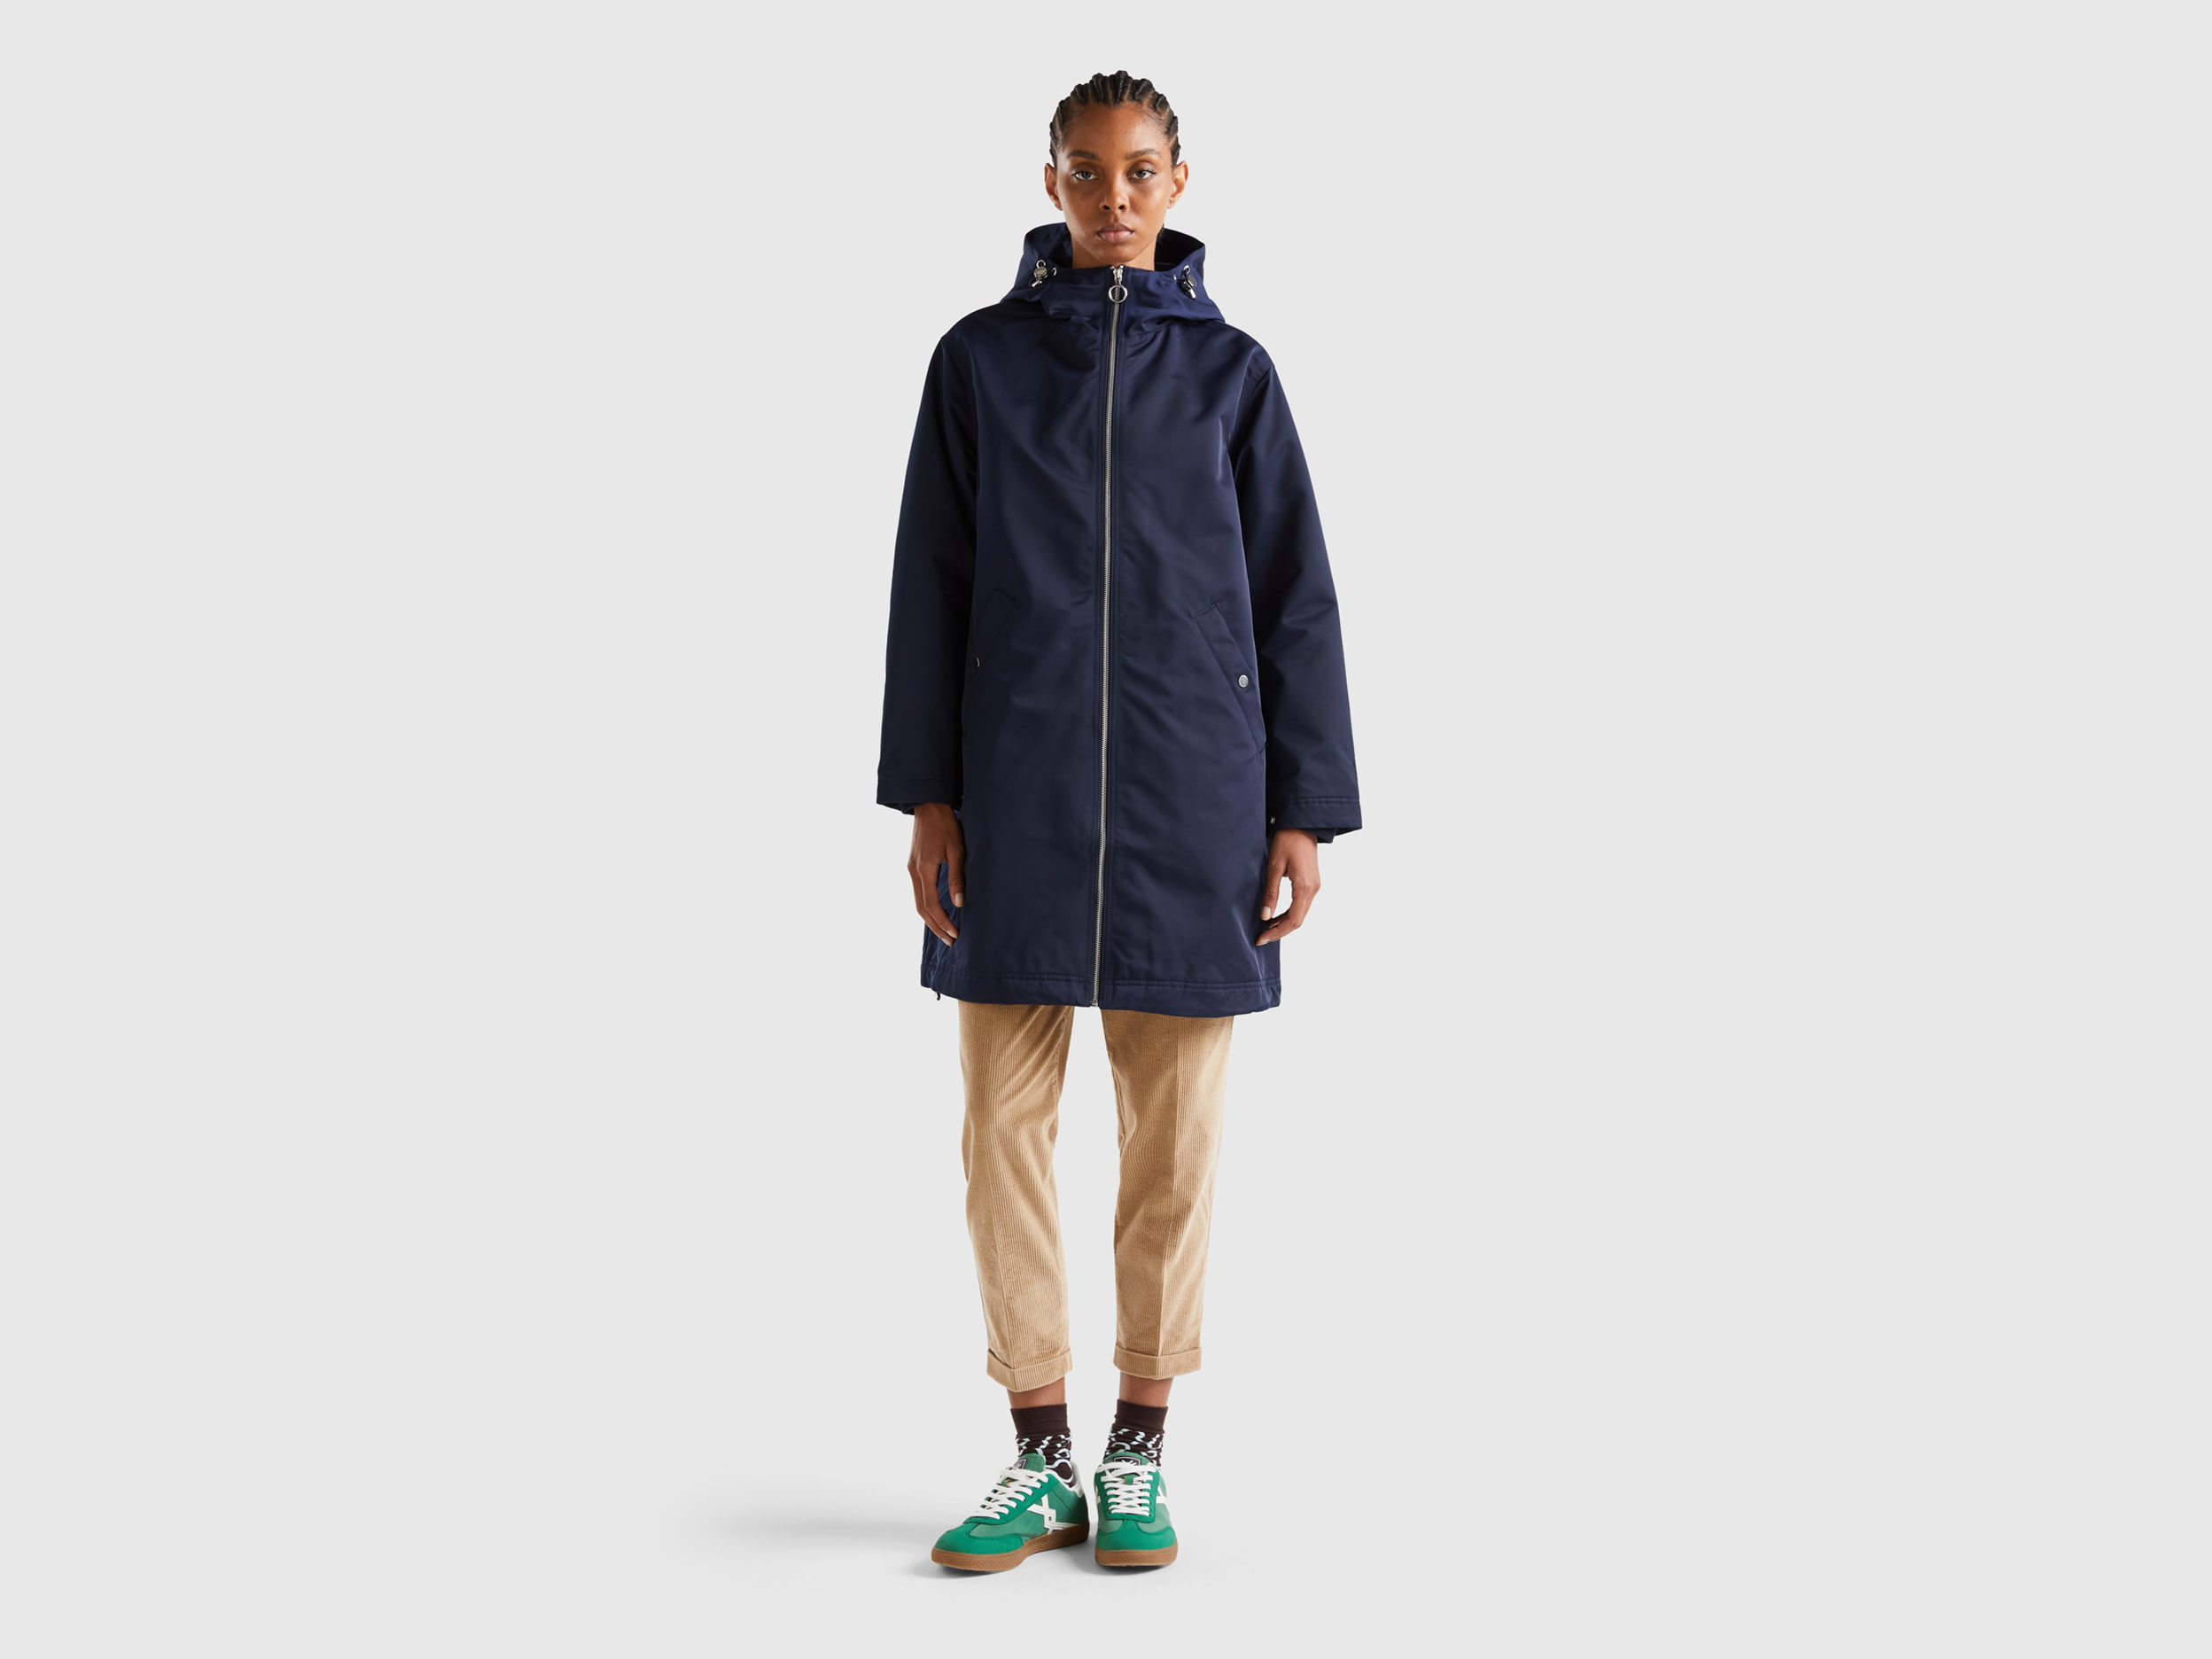 Benetton, Nylon Rainproof Jacket, size M, Dark Blue, Women